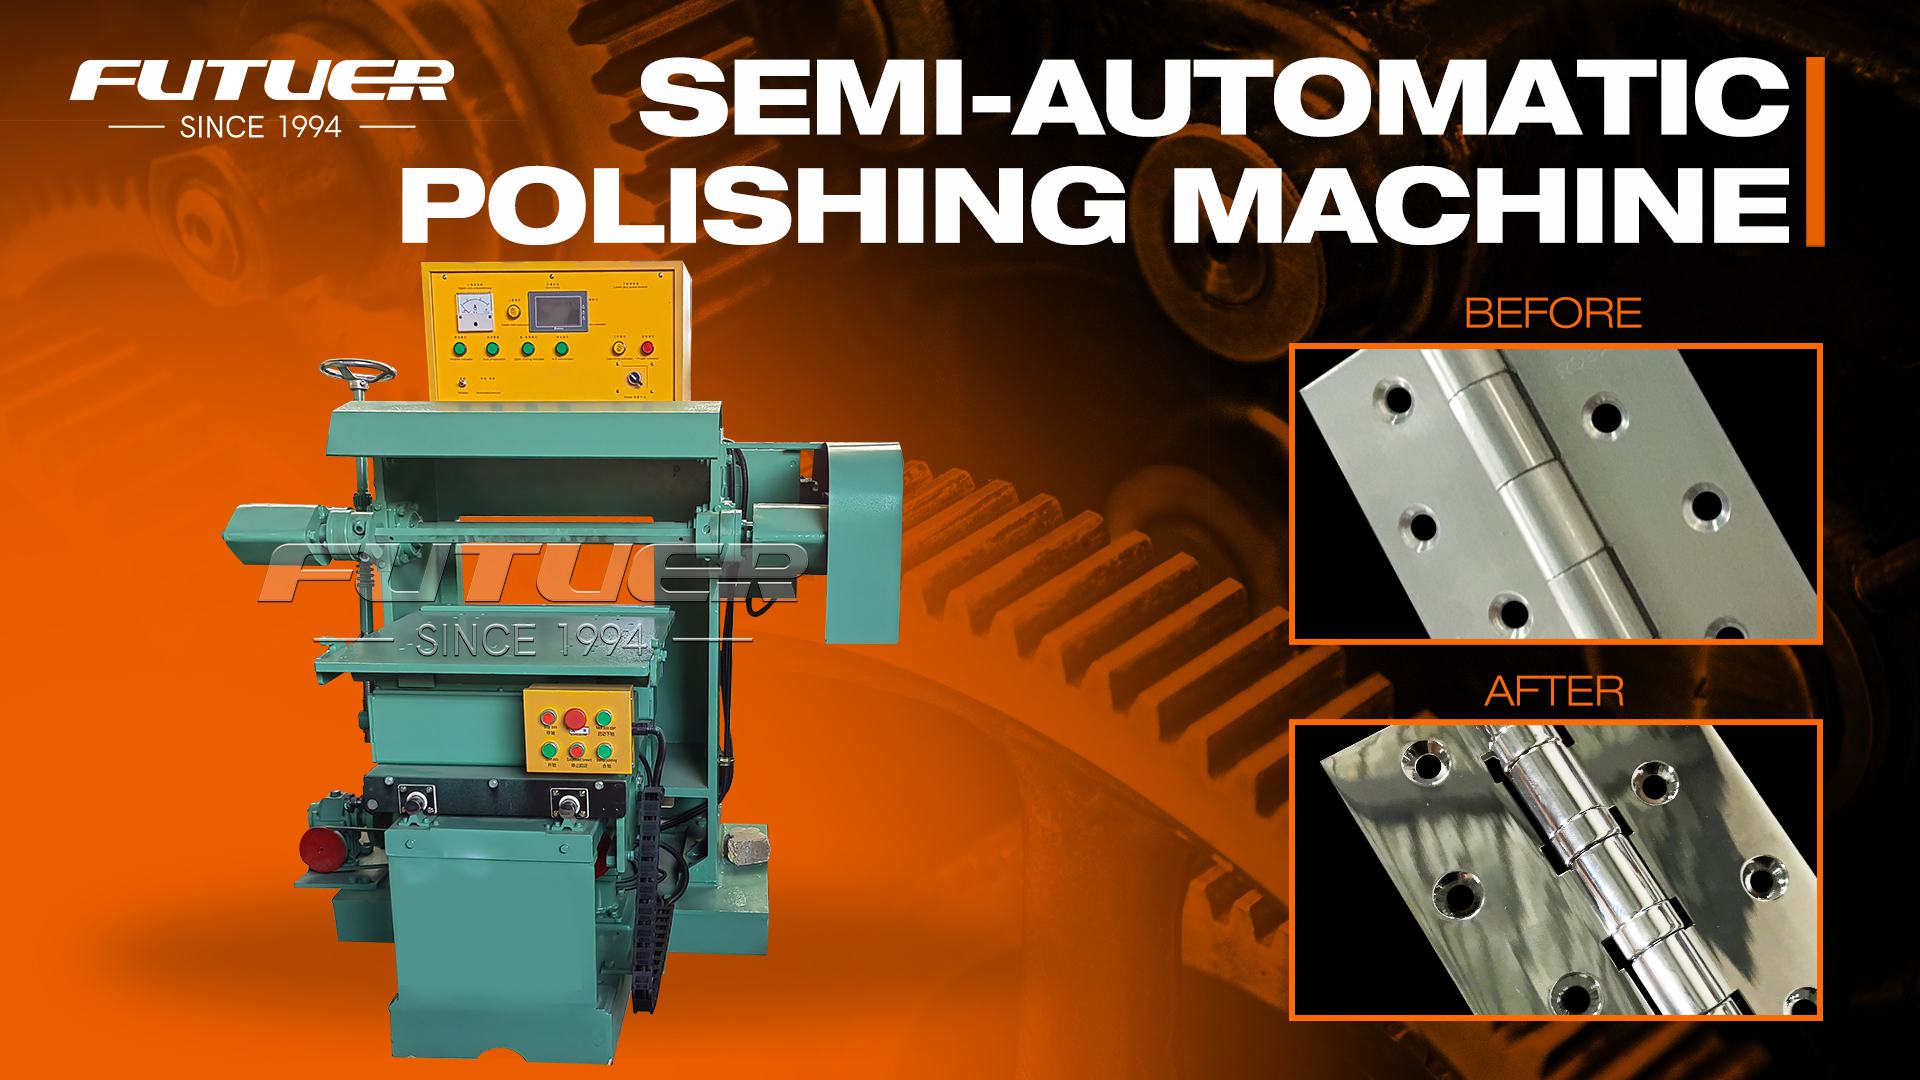 Semi-Automatic Polishing Machine